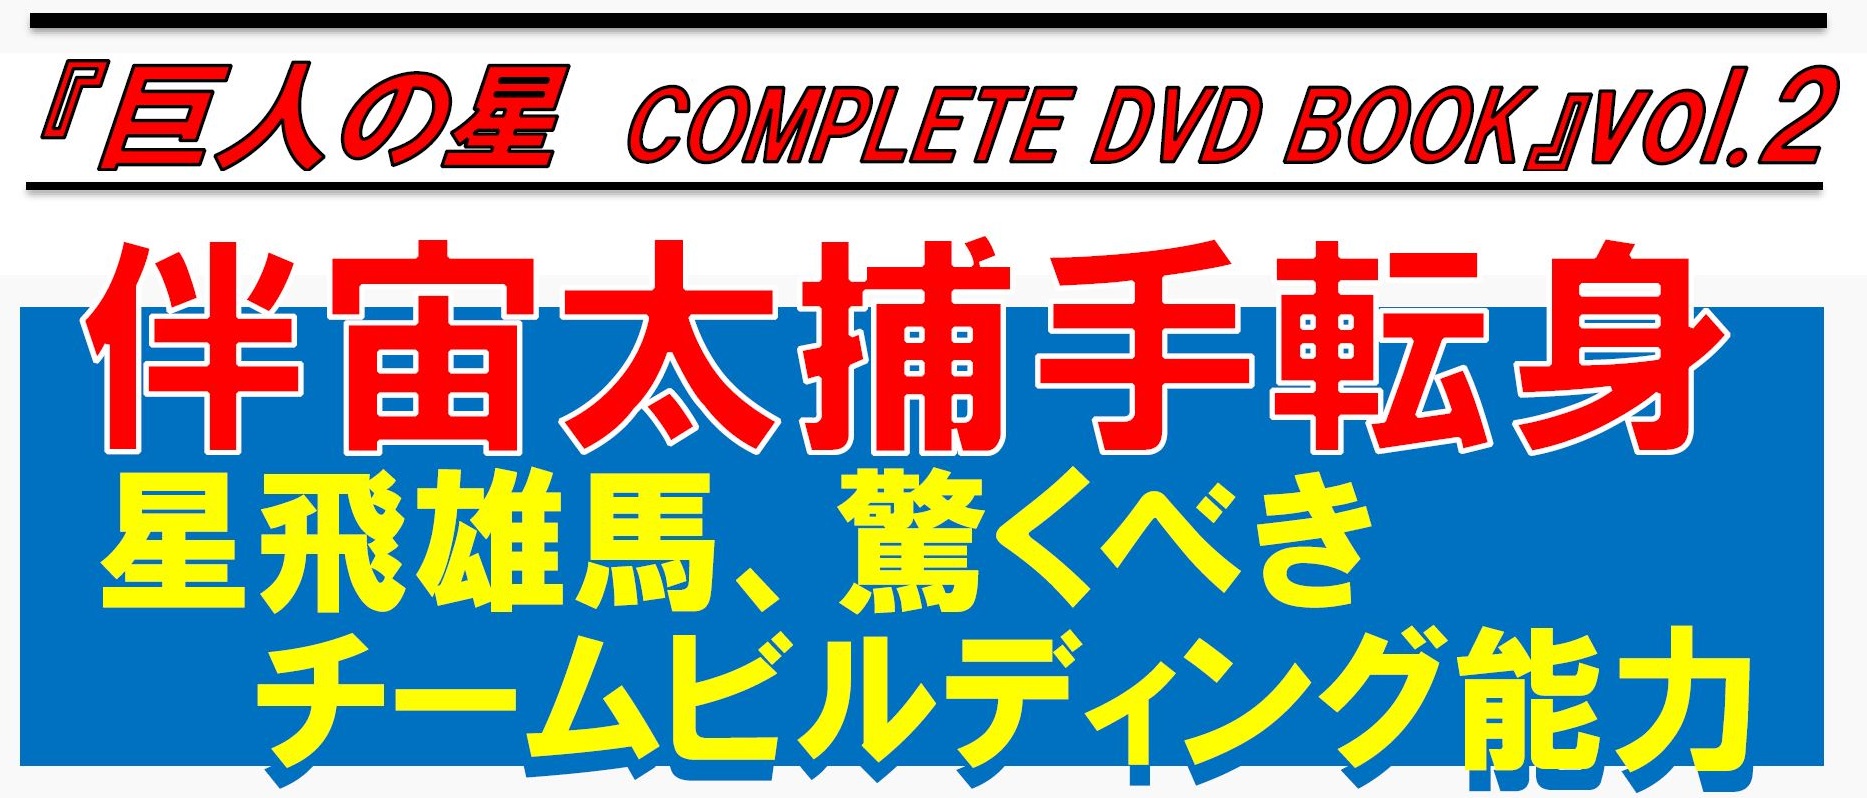 巨人の星 vol2 DVD